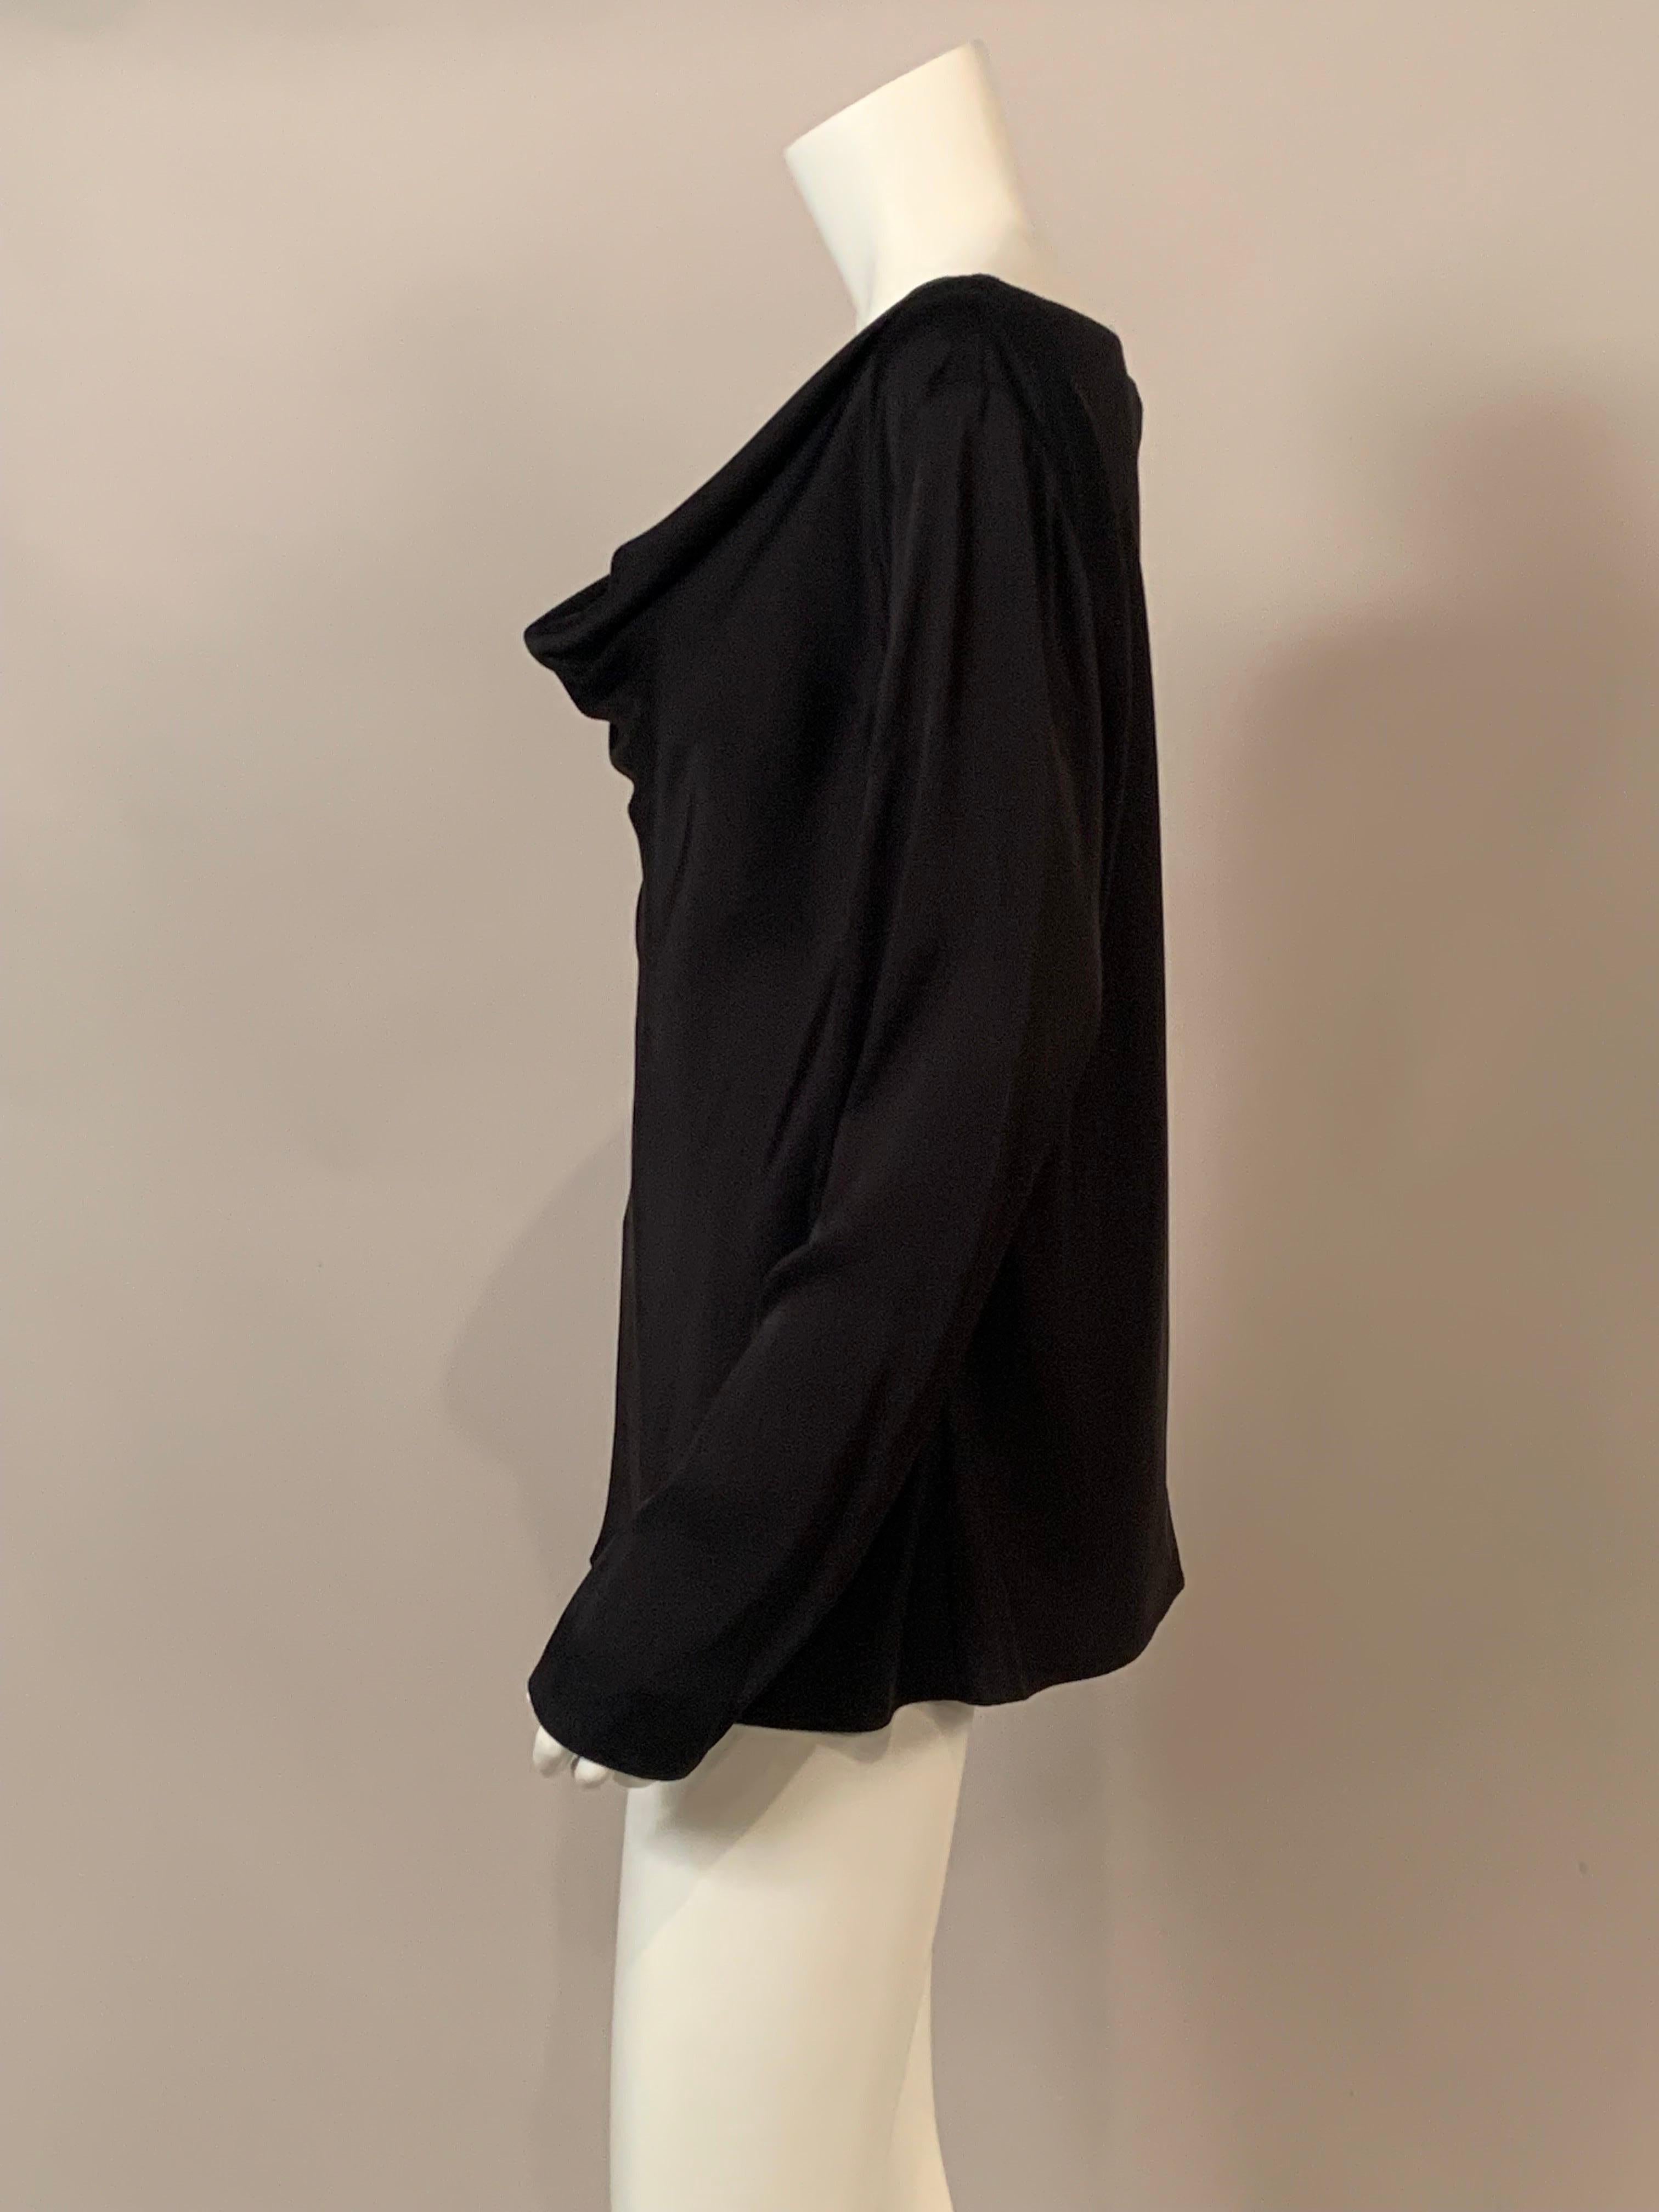 Women's Armani Collezioni Black Silk Tunic Top with Draped Neckline  For Sale